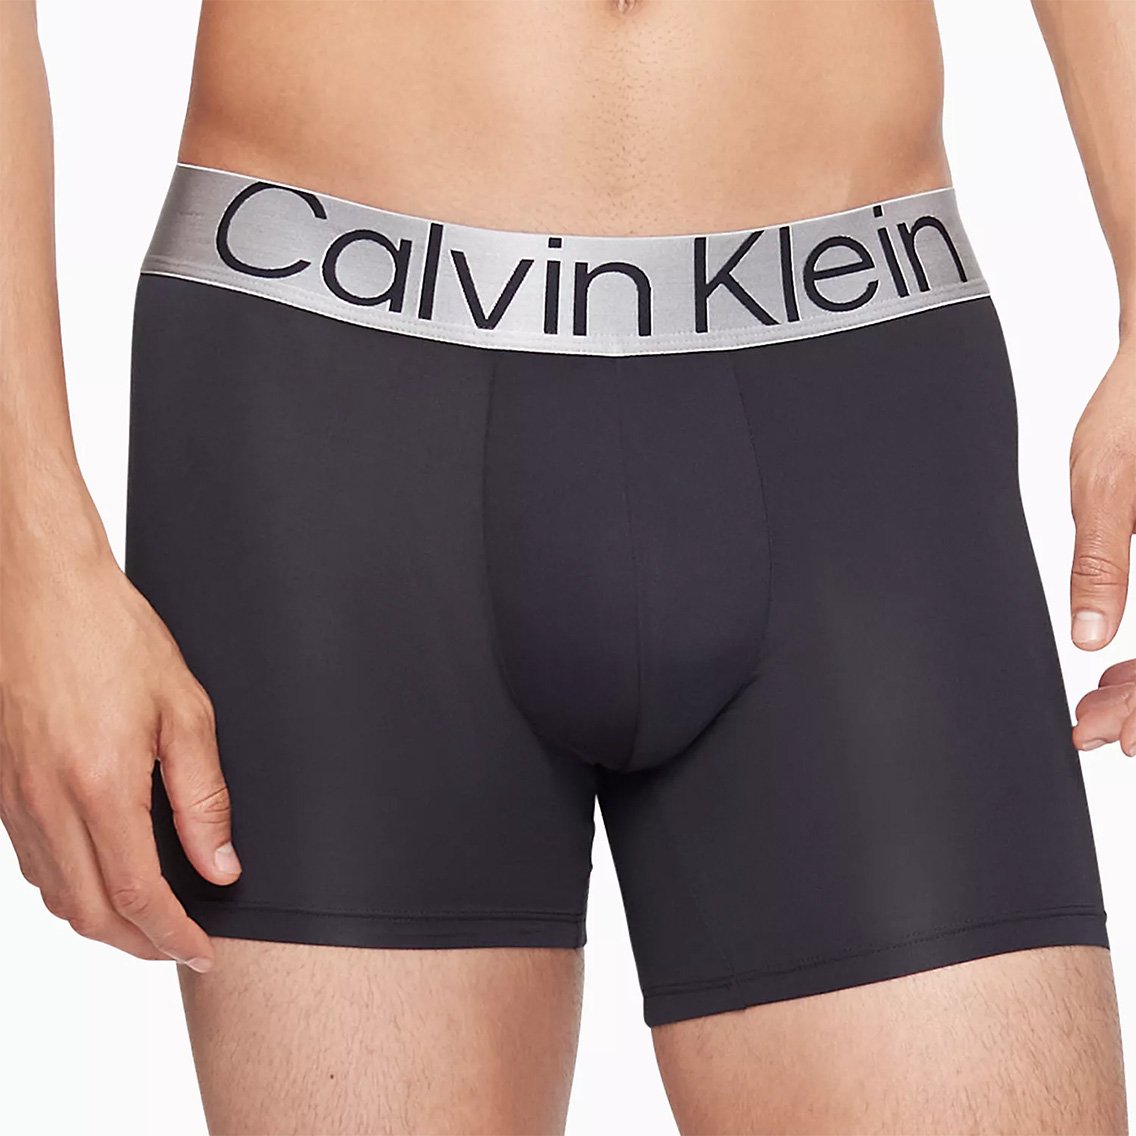 Calvin Klein(カルバンクライン)[NB3075-902]:ボクサーパンツ,男性下着 